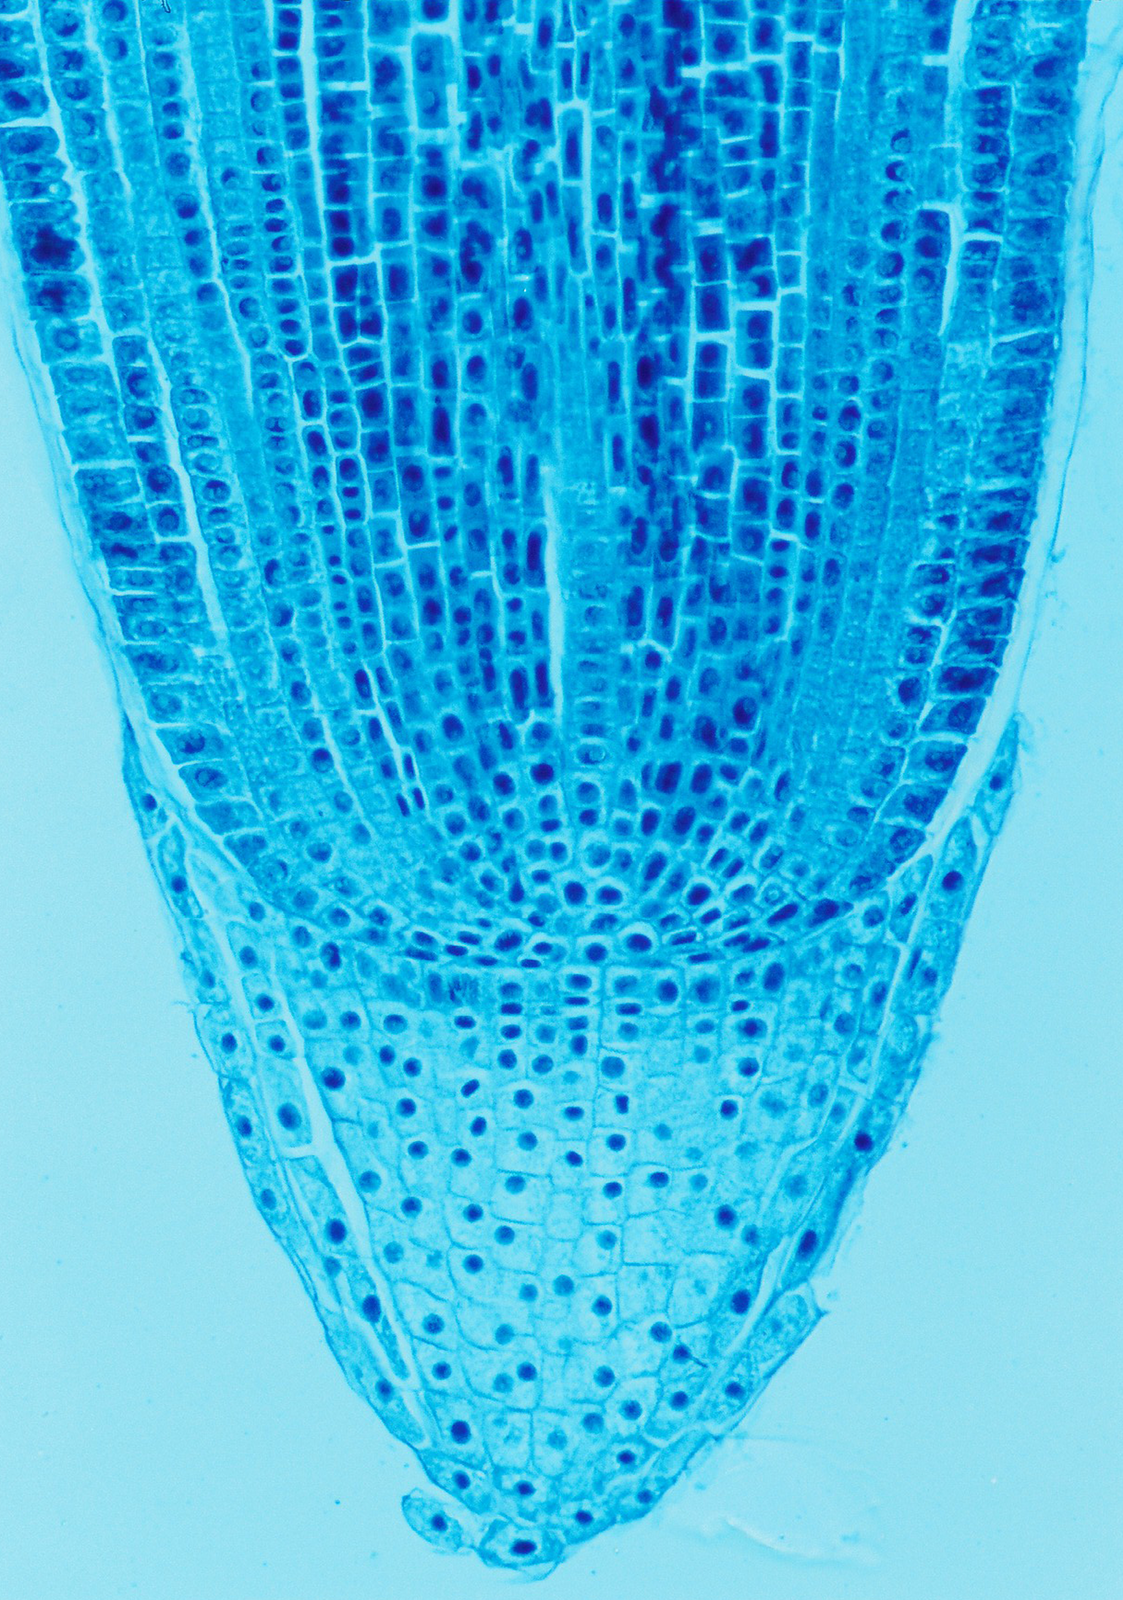 Mikrofotografia pokazuje tkanki szczytu korzenia w przekroju podłużnym. Komórki cienkościenne, o dużych jądrach.